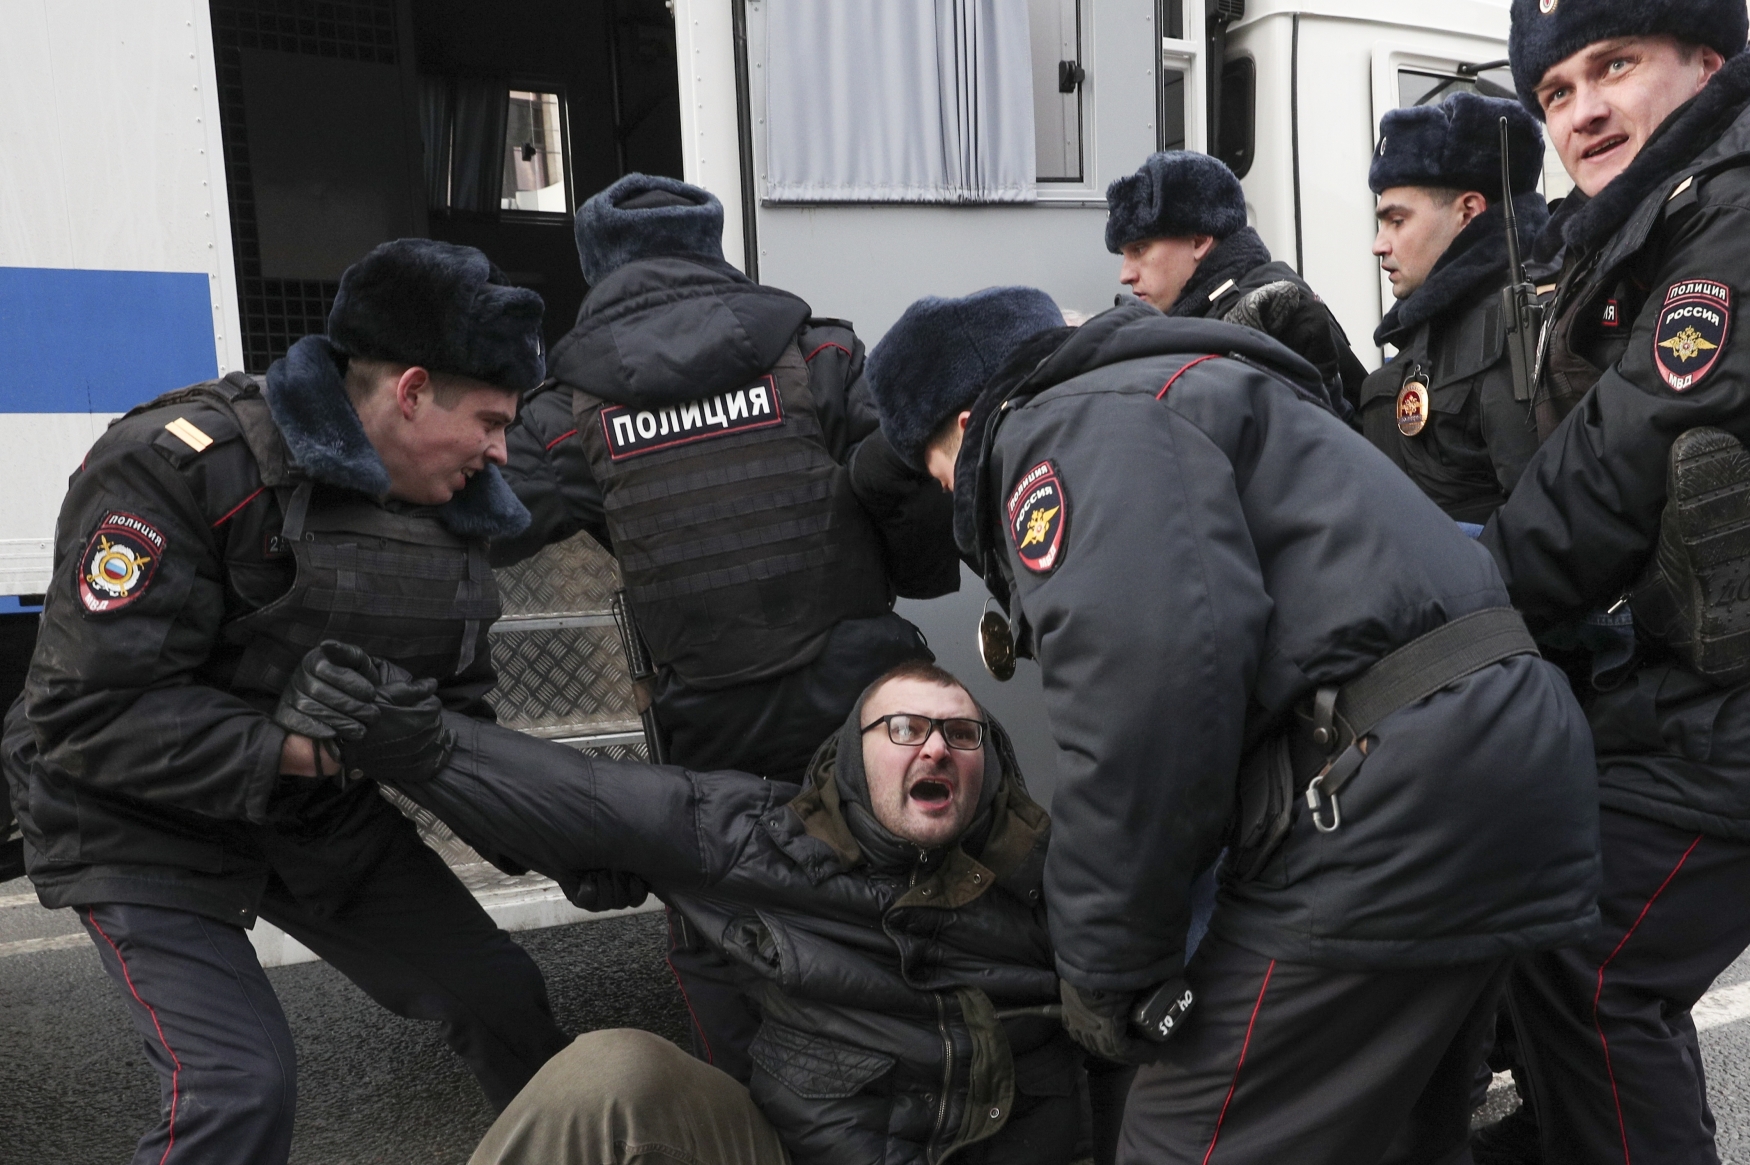 Moskevská demonstrace za svobodu internetu